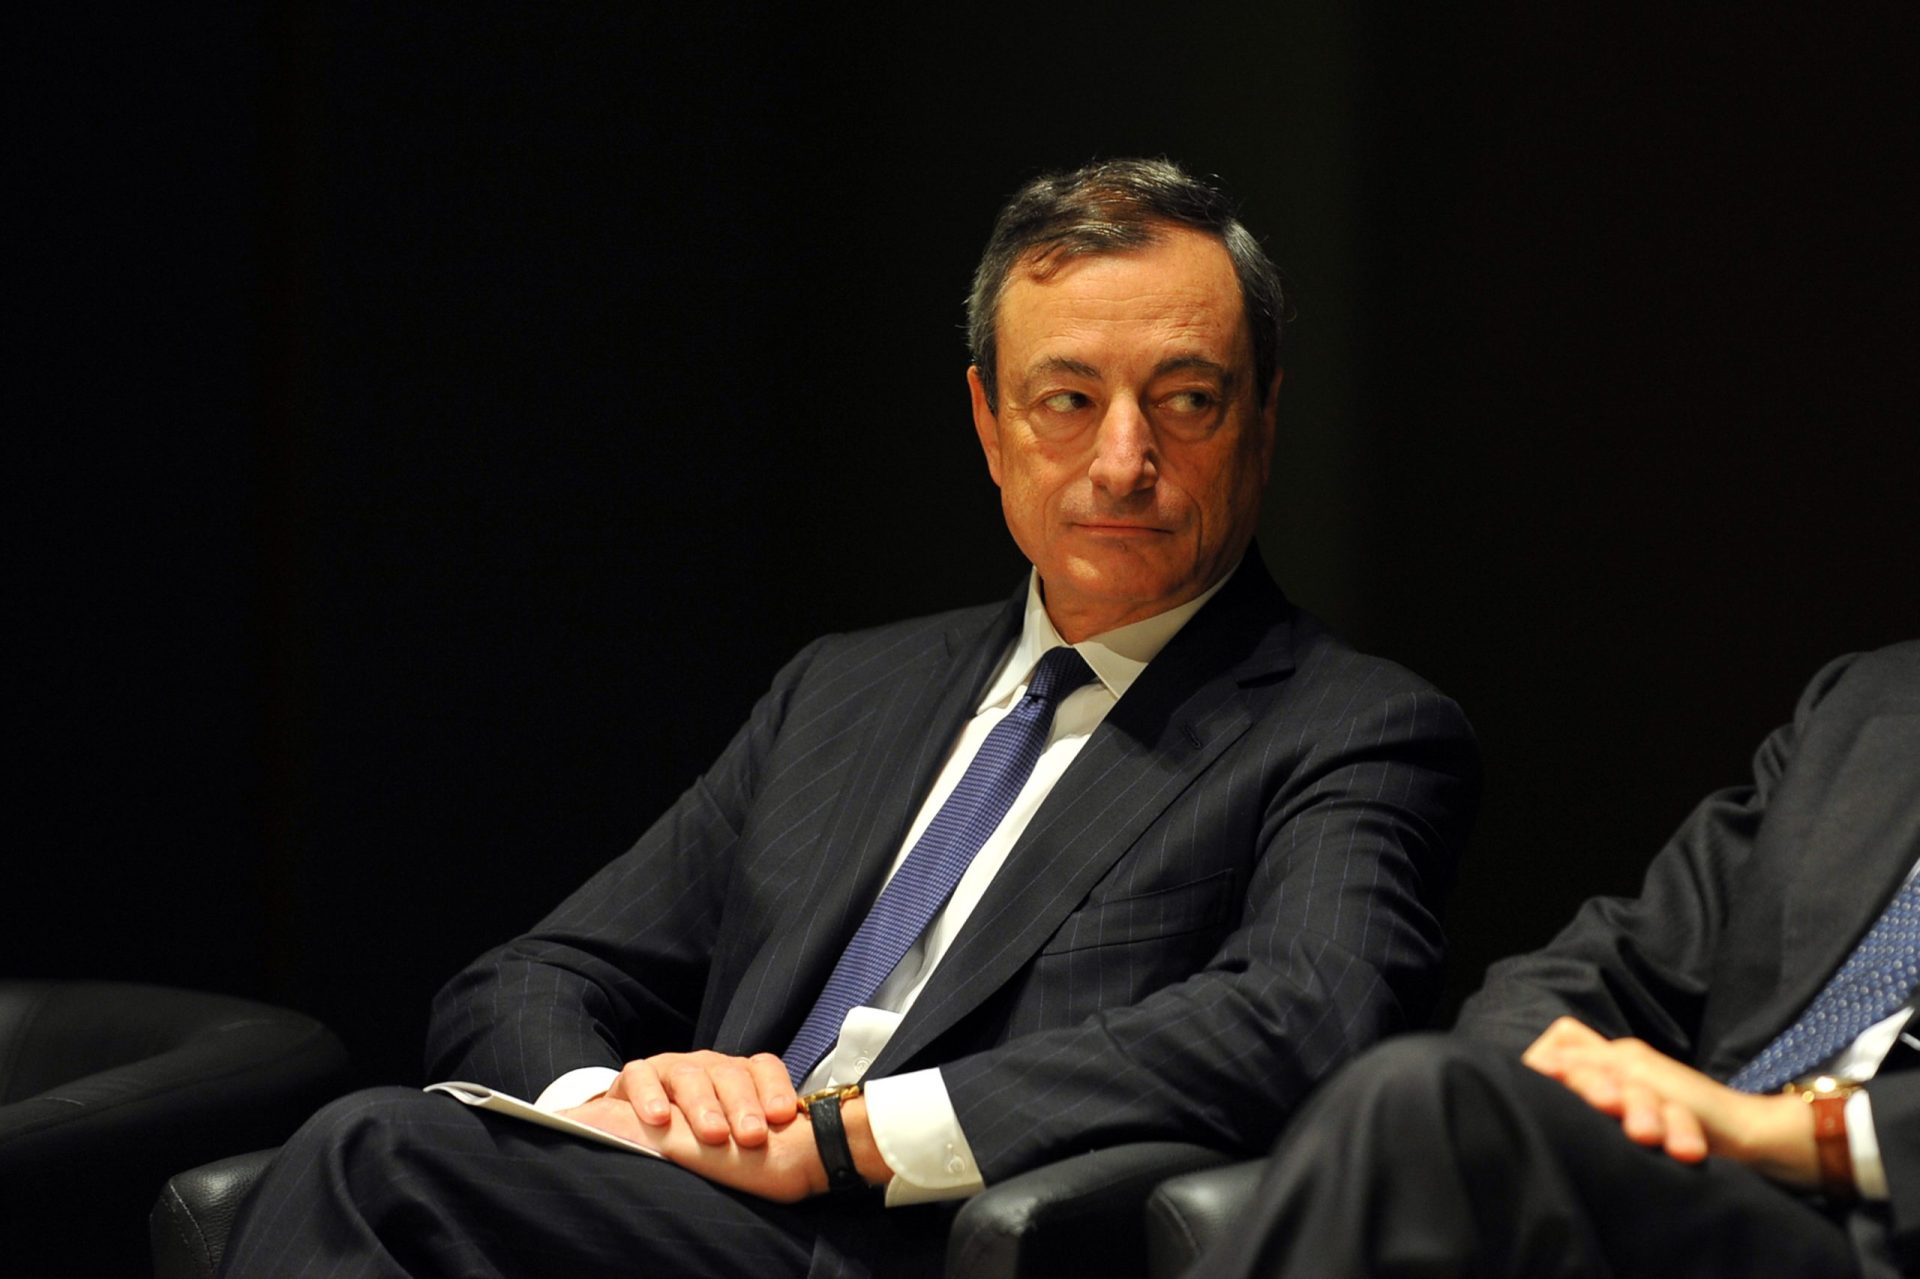 Mario Draghi fala em “progressos notáveis” mas deixa aviso a Costa